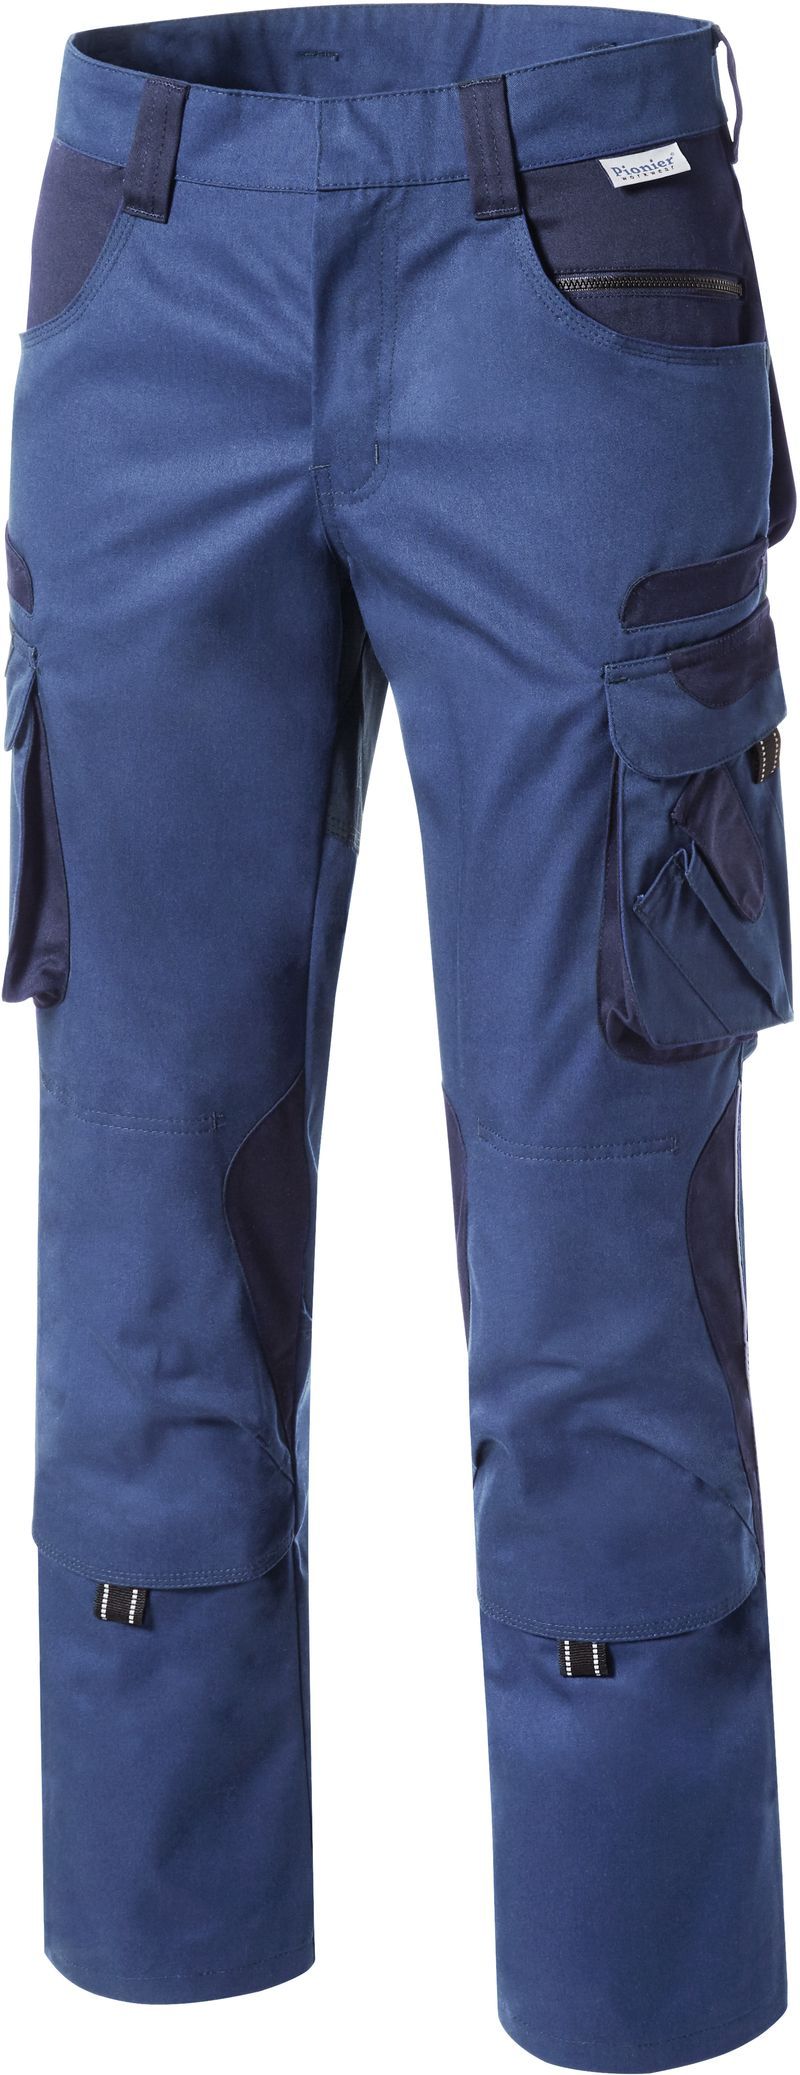 PIONIER-Workwear, Herren-Arbeits-Berufs-Bund-Hose, TOOLS, 285g/m, nordic/ blue